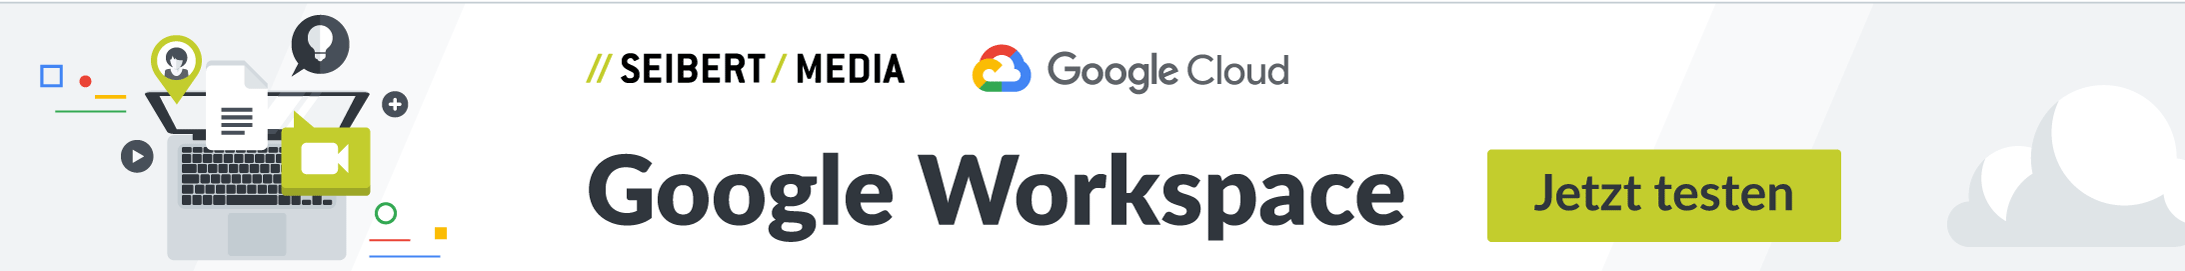 Google Workspace jetzt testen